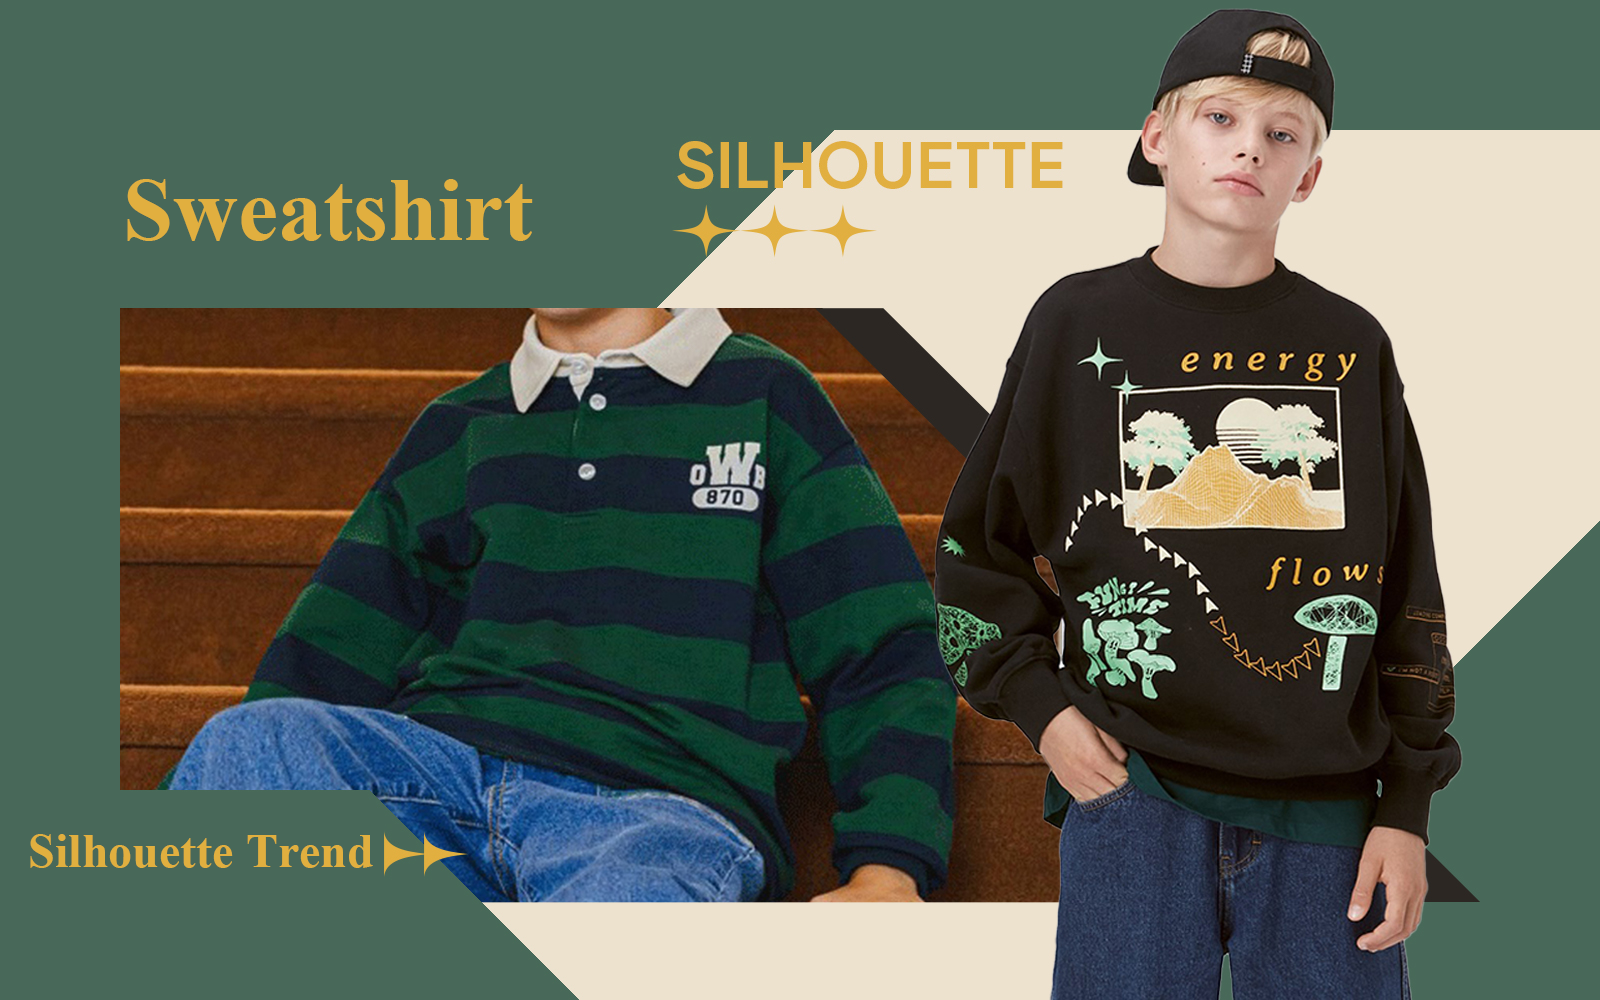 Sweatshirt -- The Silhouette Trend for Boyswear